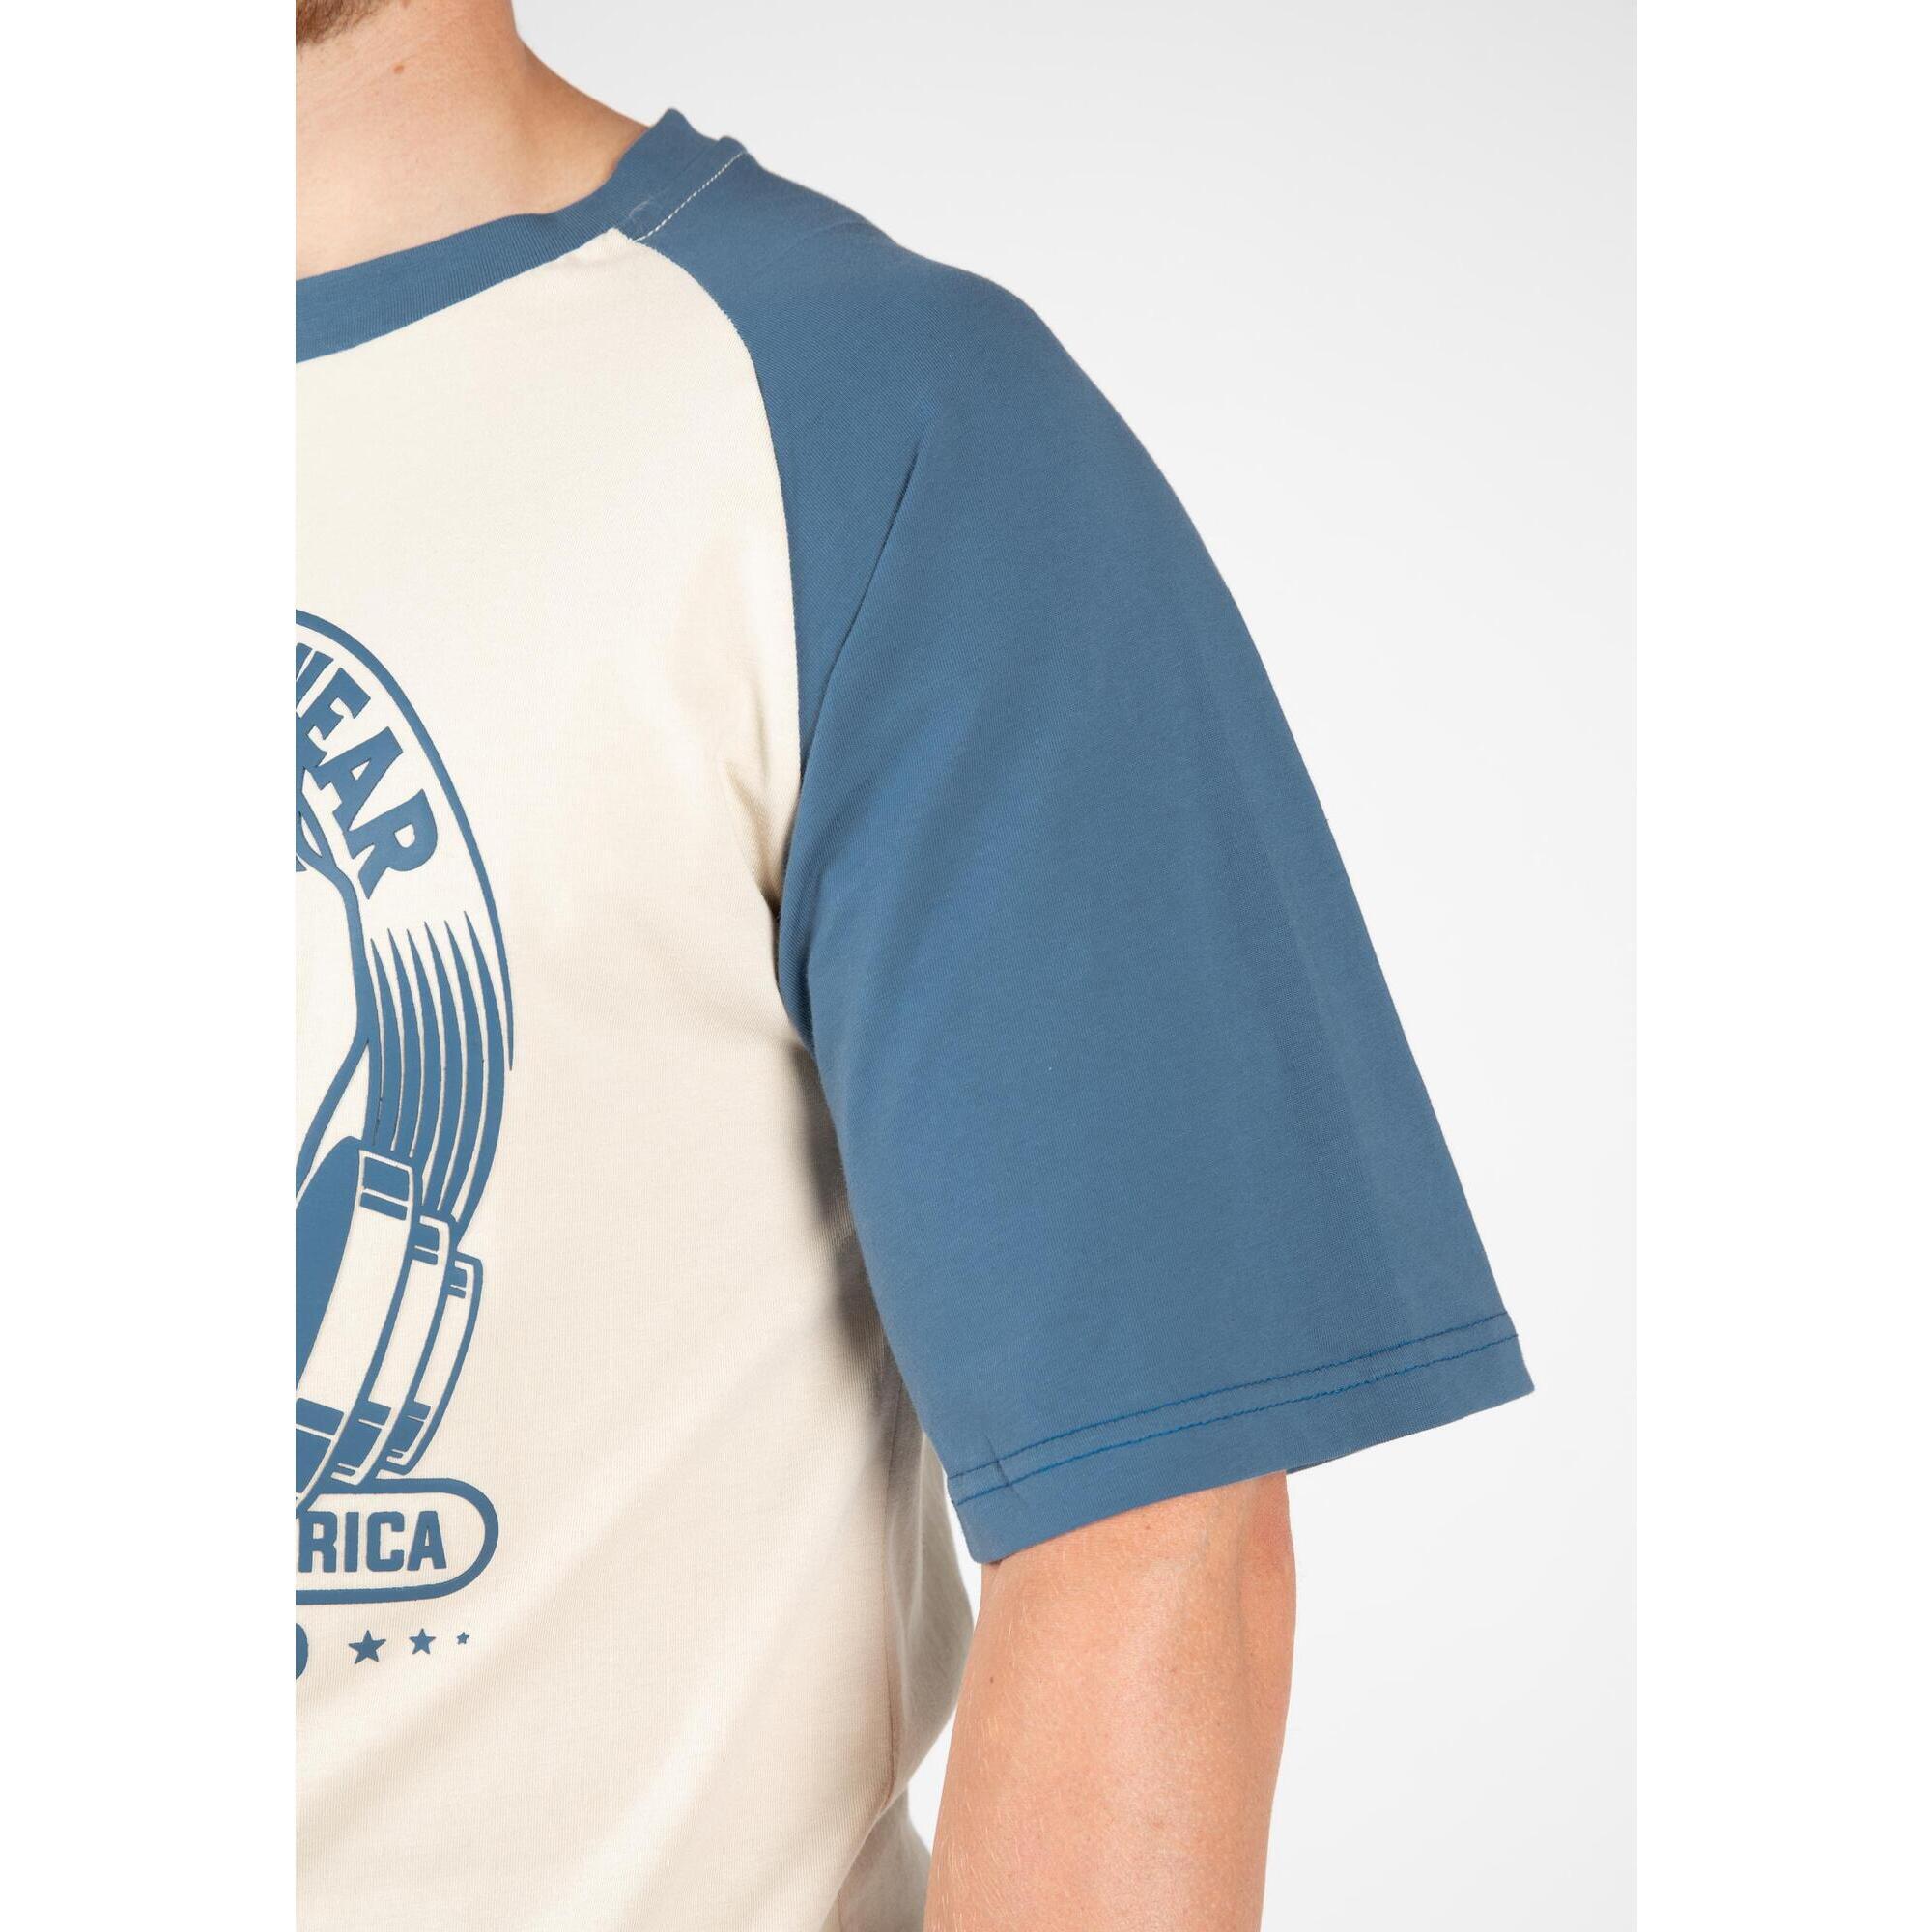 Майка логан. Gorilla Wear GW-90568\bez-BK футболка "Logan", бежевая-чёрная. 3pm Wear синие.